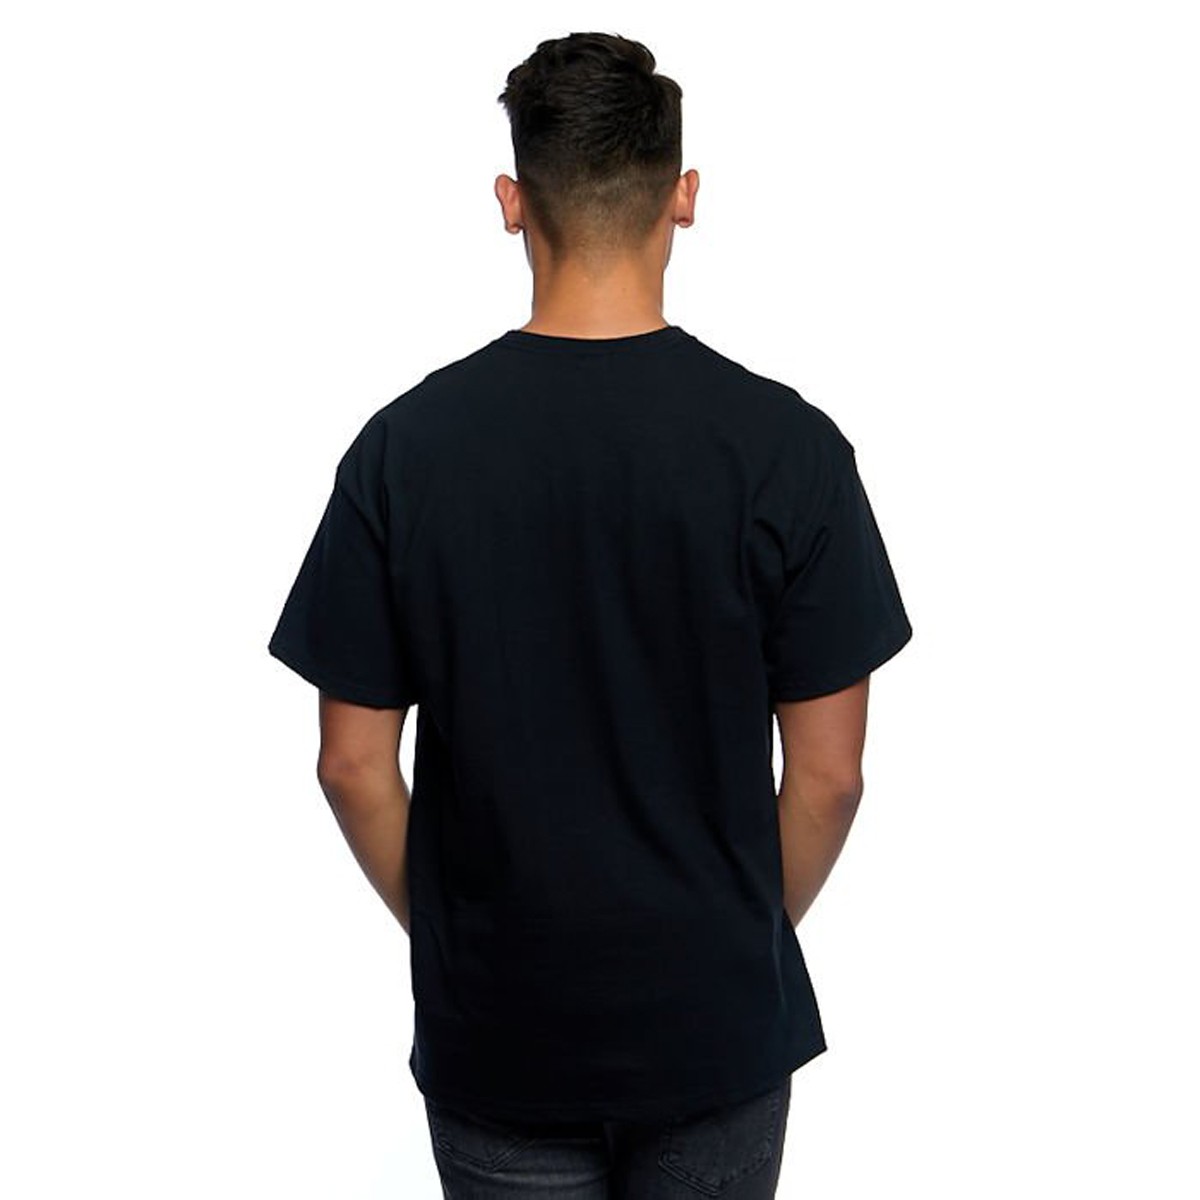 Thrasher Skate Mag Black T-Shirt 110101